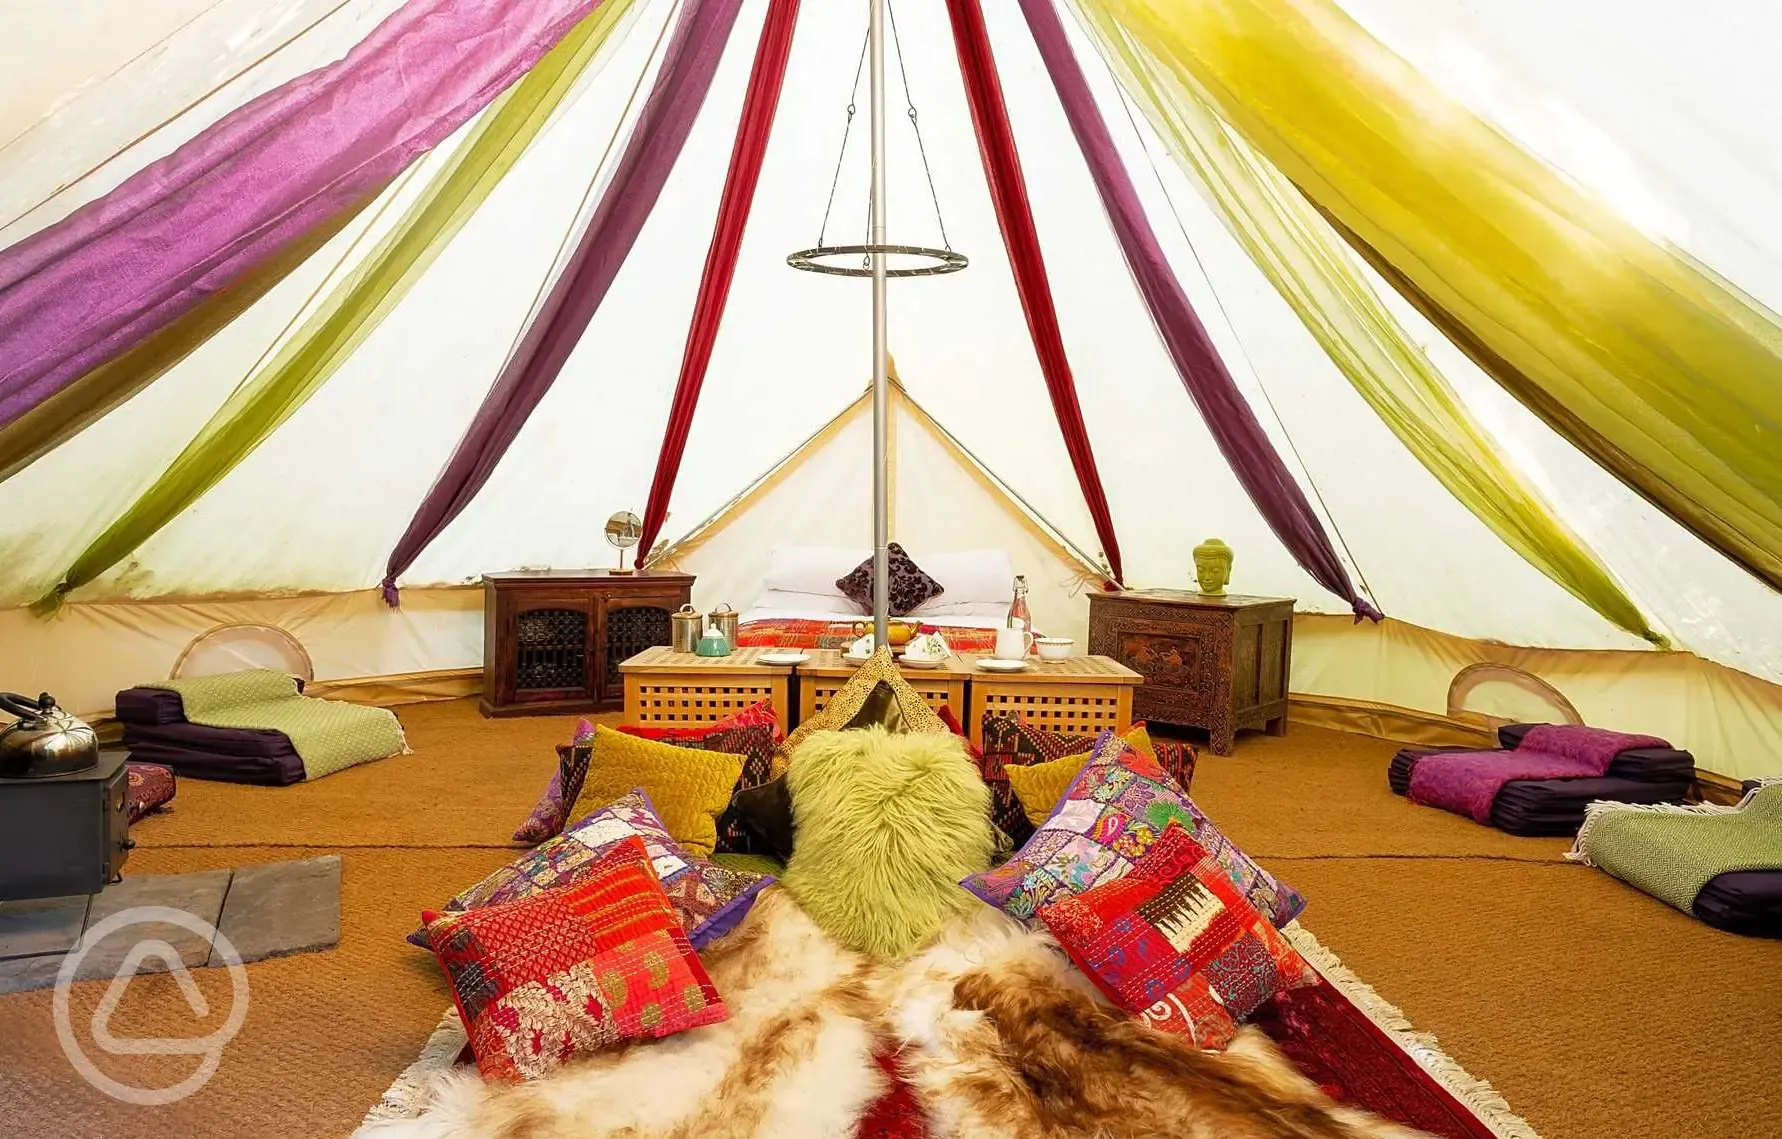 Bedouin bell tent interior